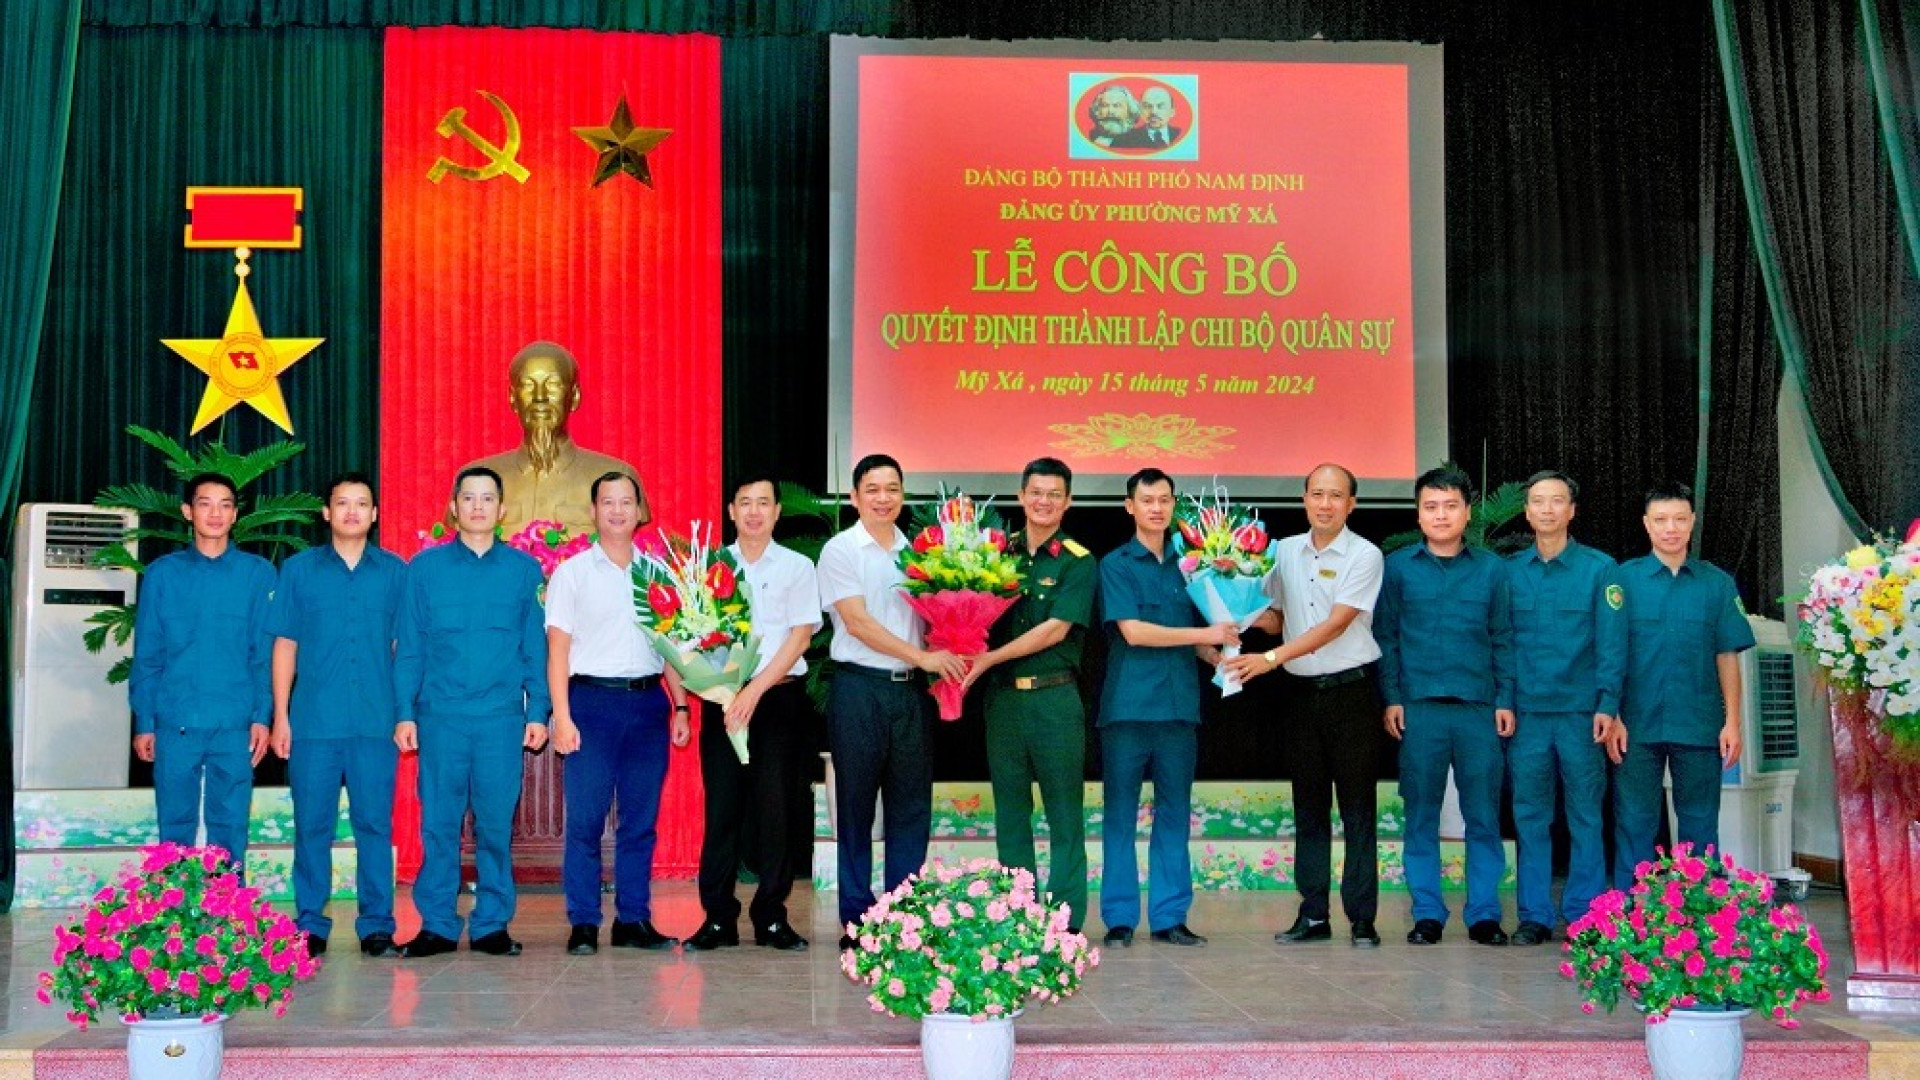 Công bố quyết định thành lập Chi bộ Quân sự phường Mỹ Xá, thành phố Nam Định